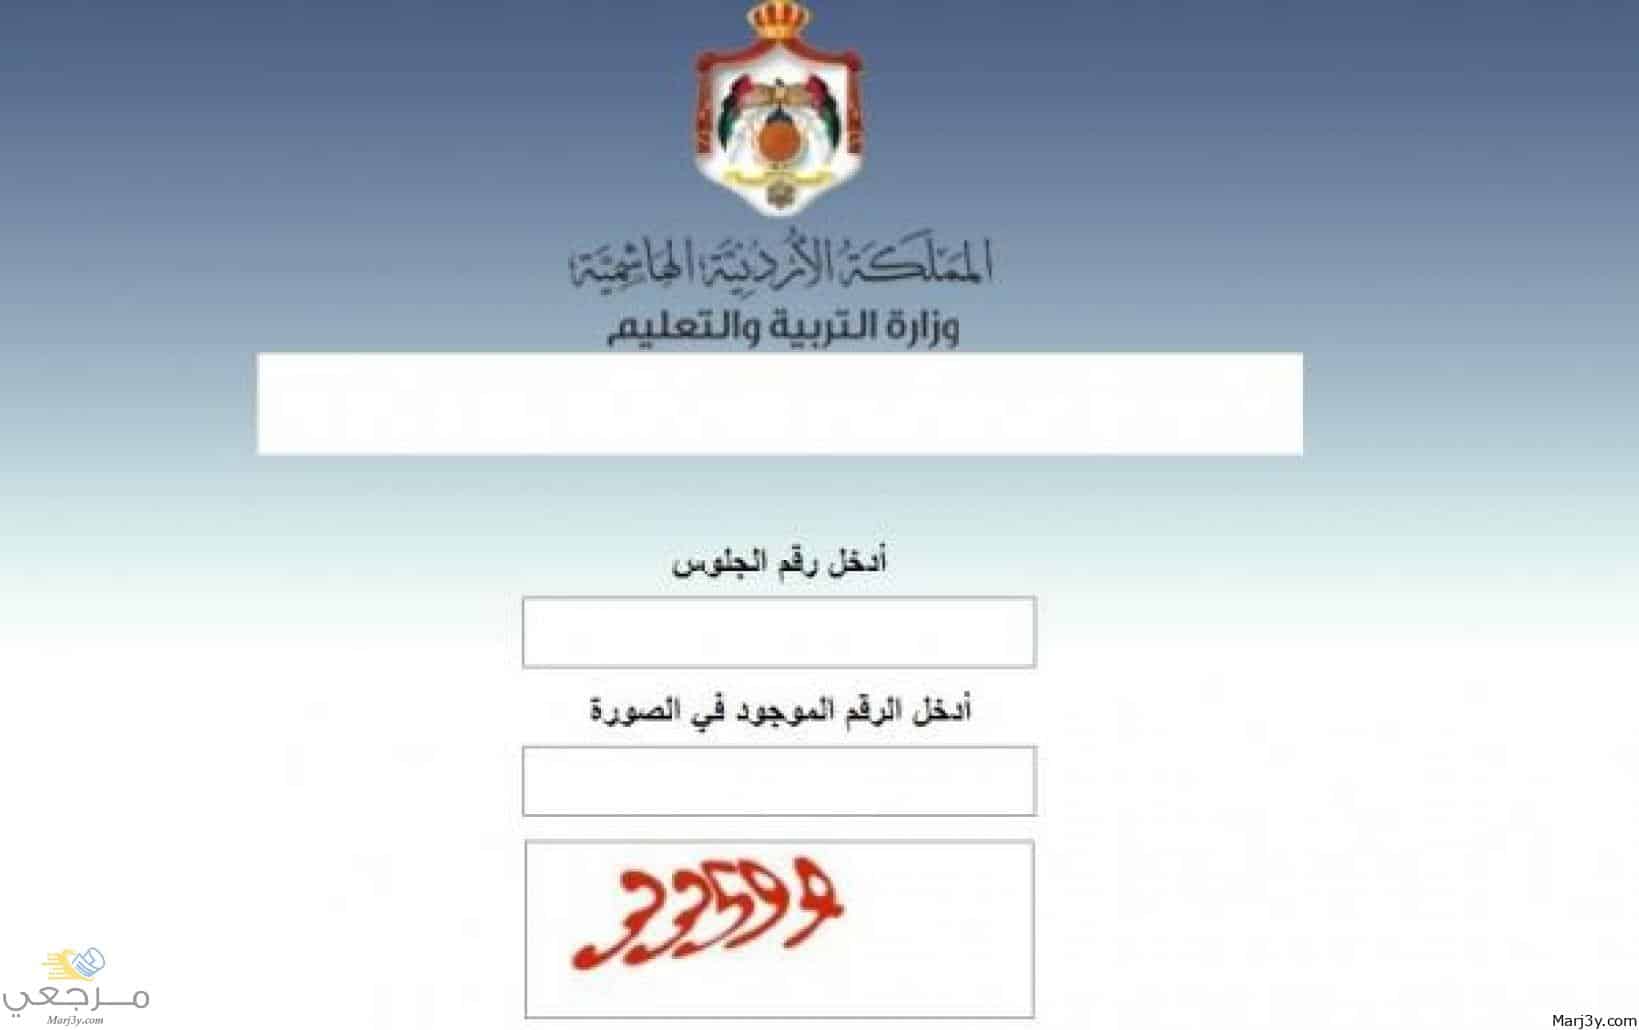 “الآن” رابط نتائج التوجيهي الأردن 2022 حسب الاسم والرقم moe.gov.jo موقع وزارة التربية الأردنية